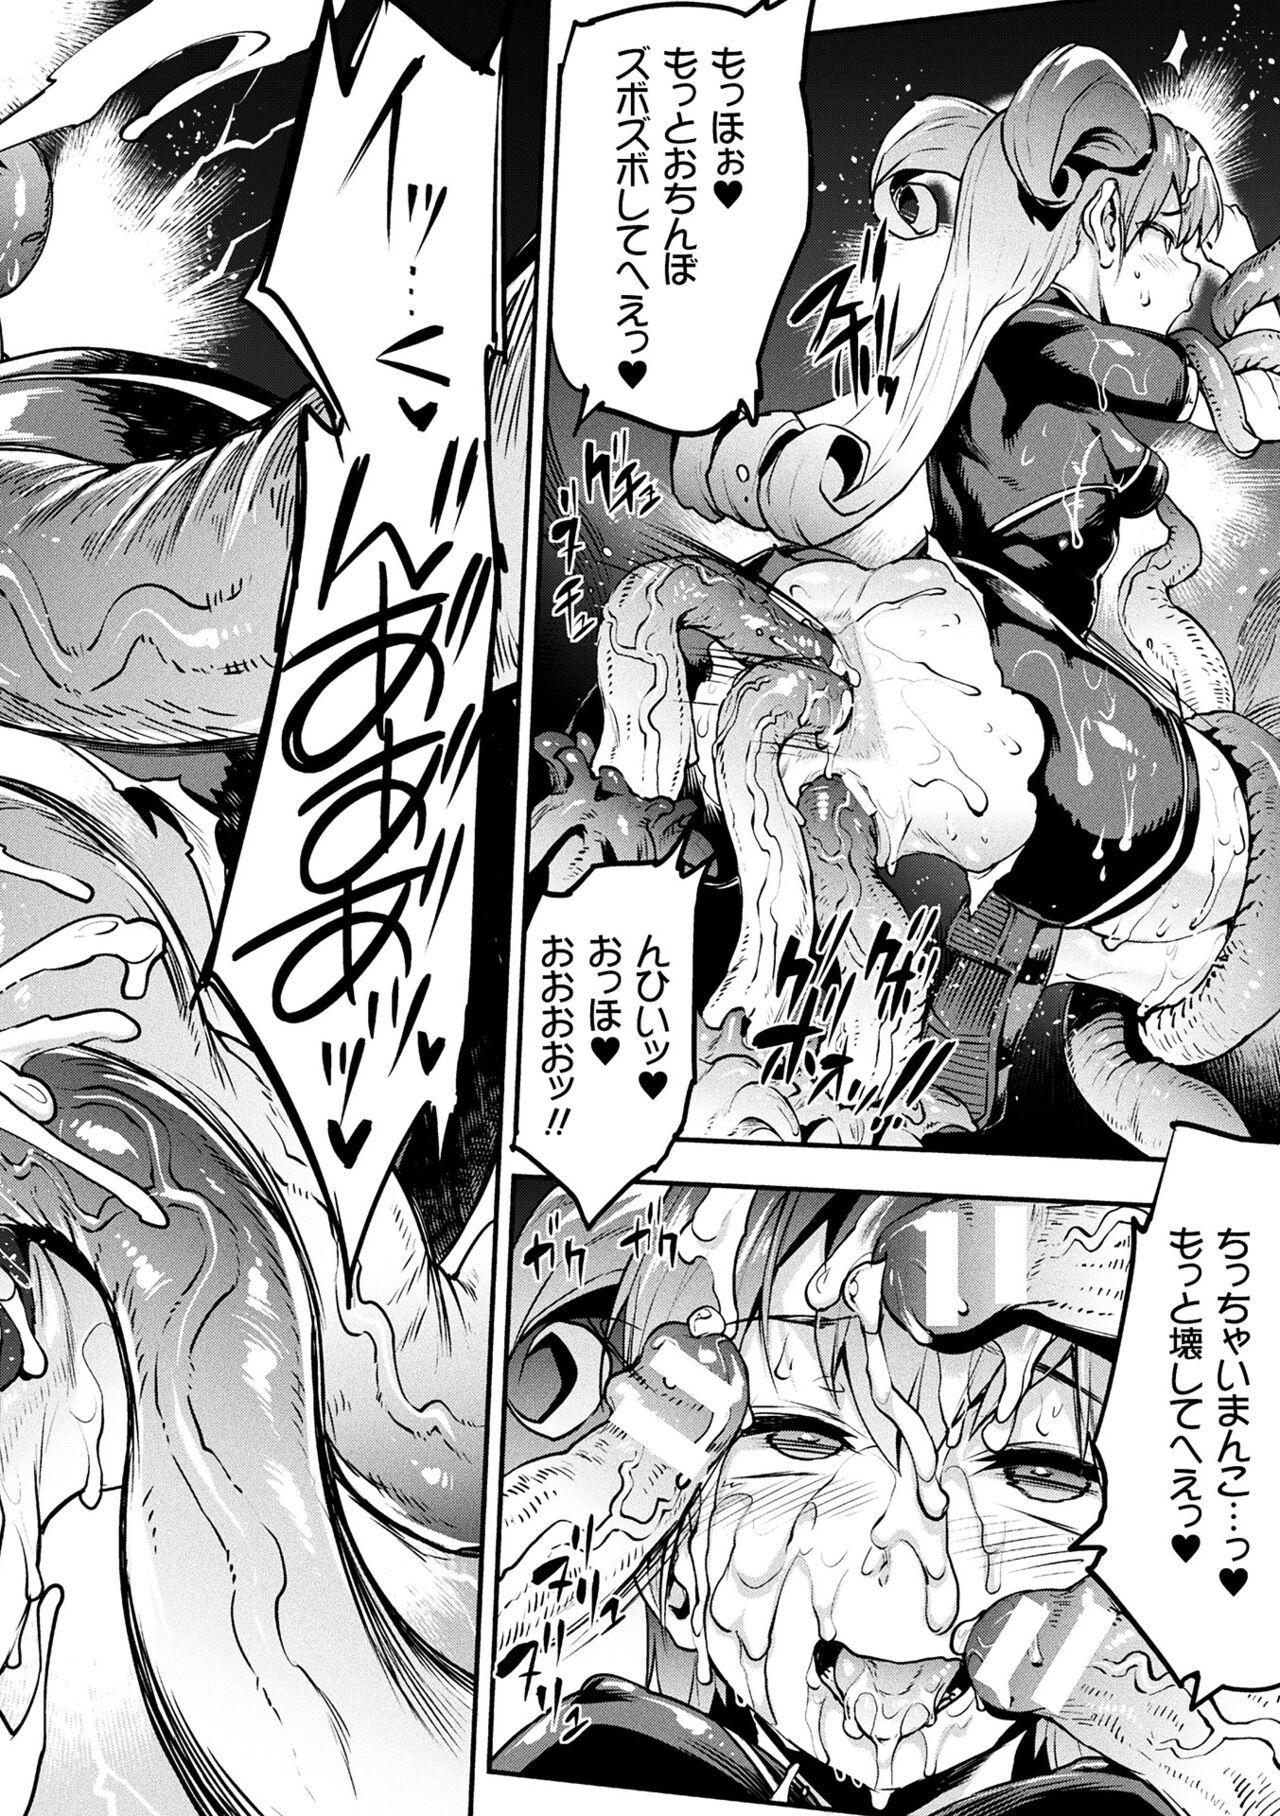 [Erect Sawaru] Raikou Shinki Igis Magia III -PANDRA saga 3rd ignition- 4 [Digital] 63